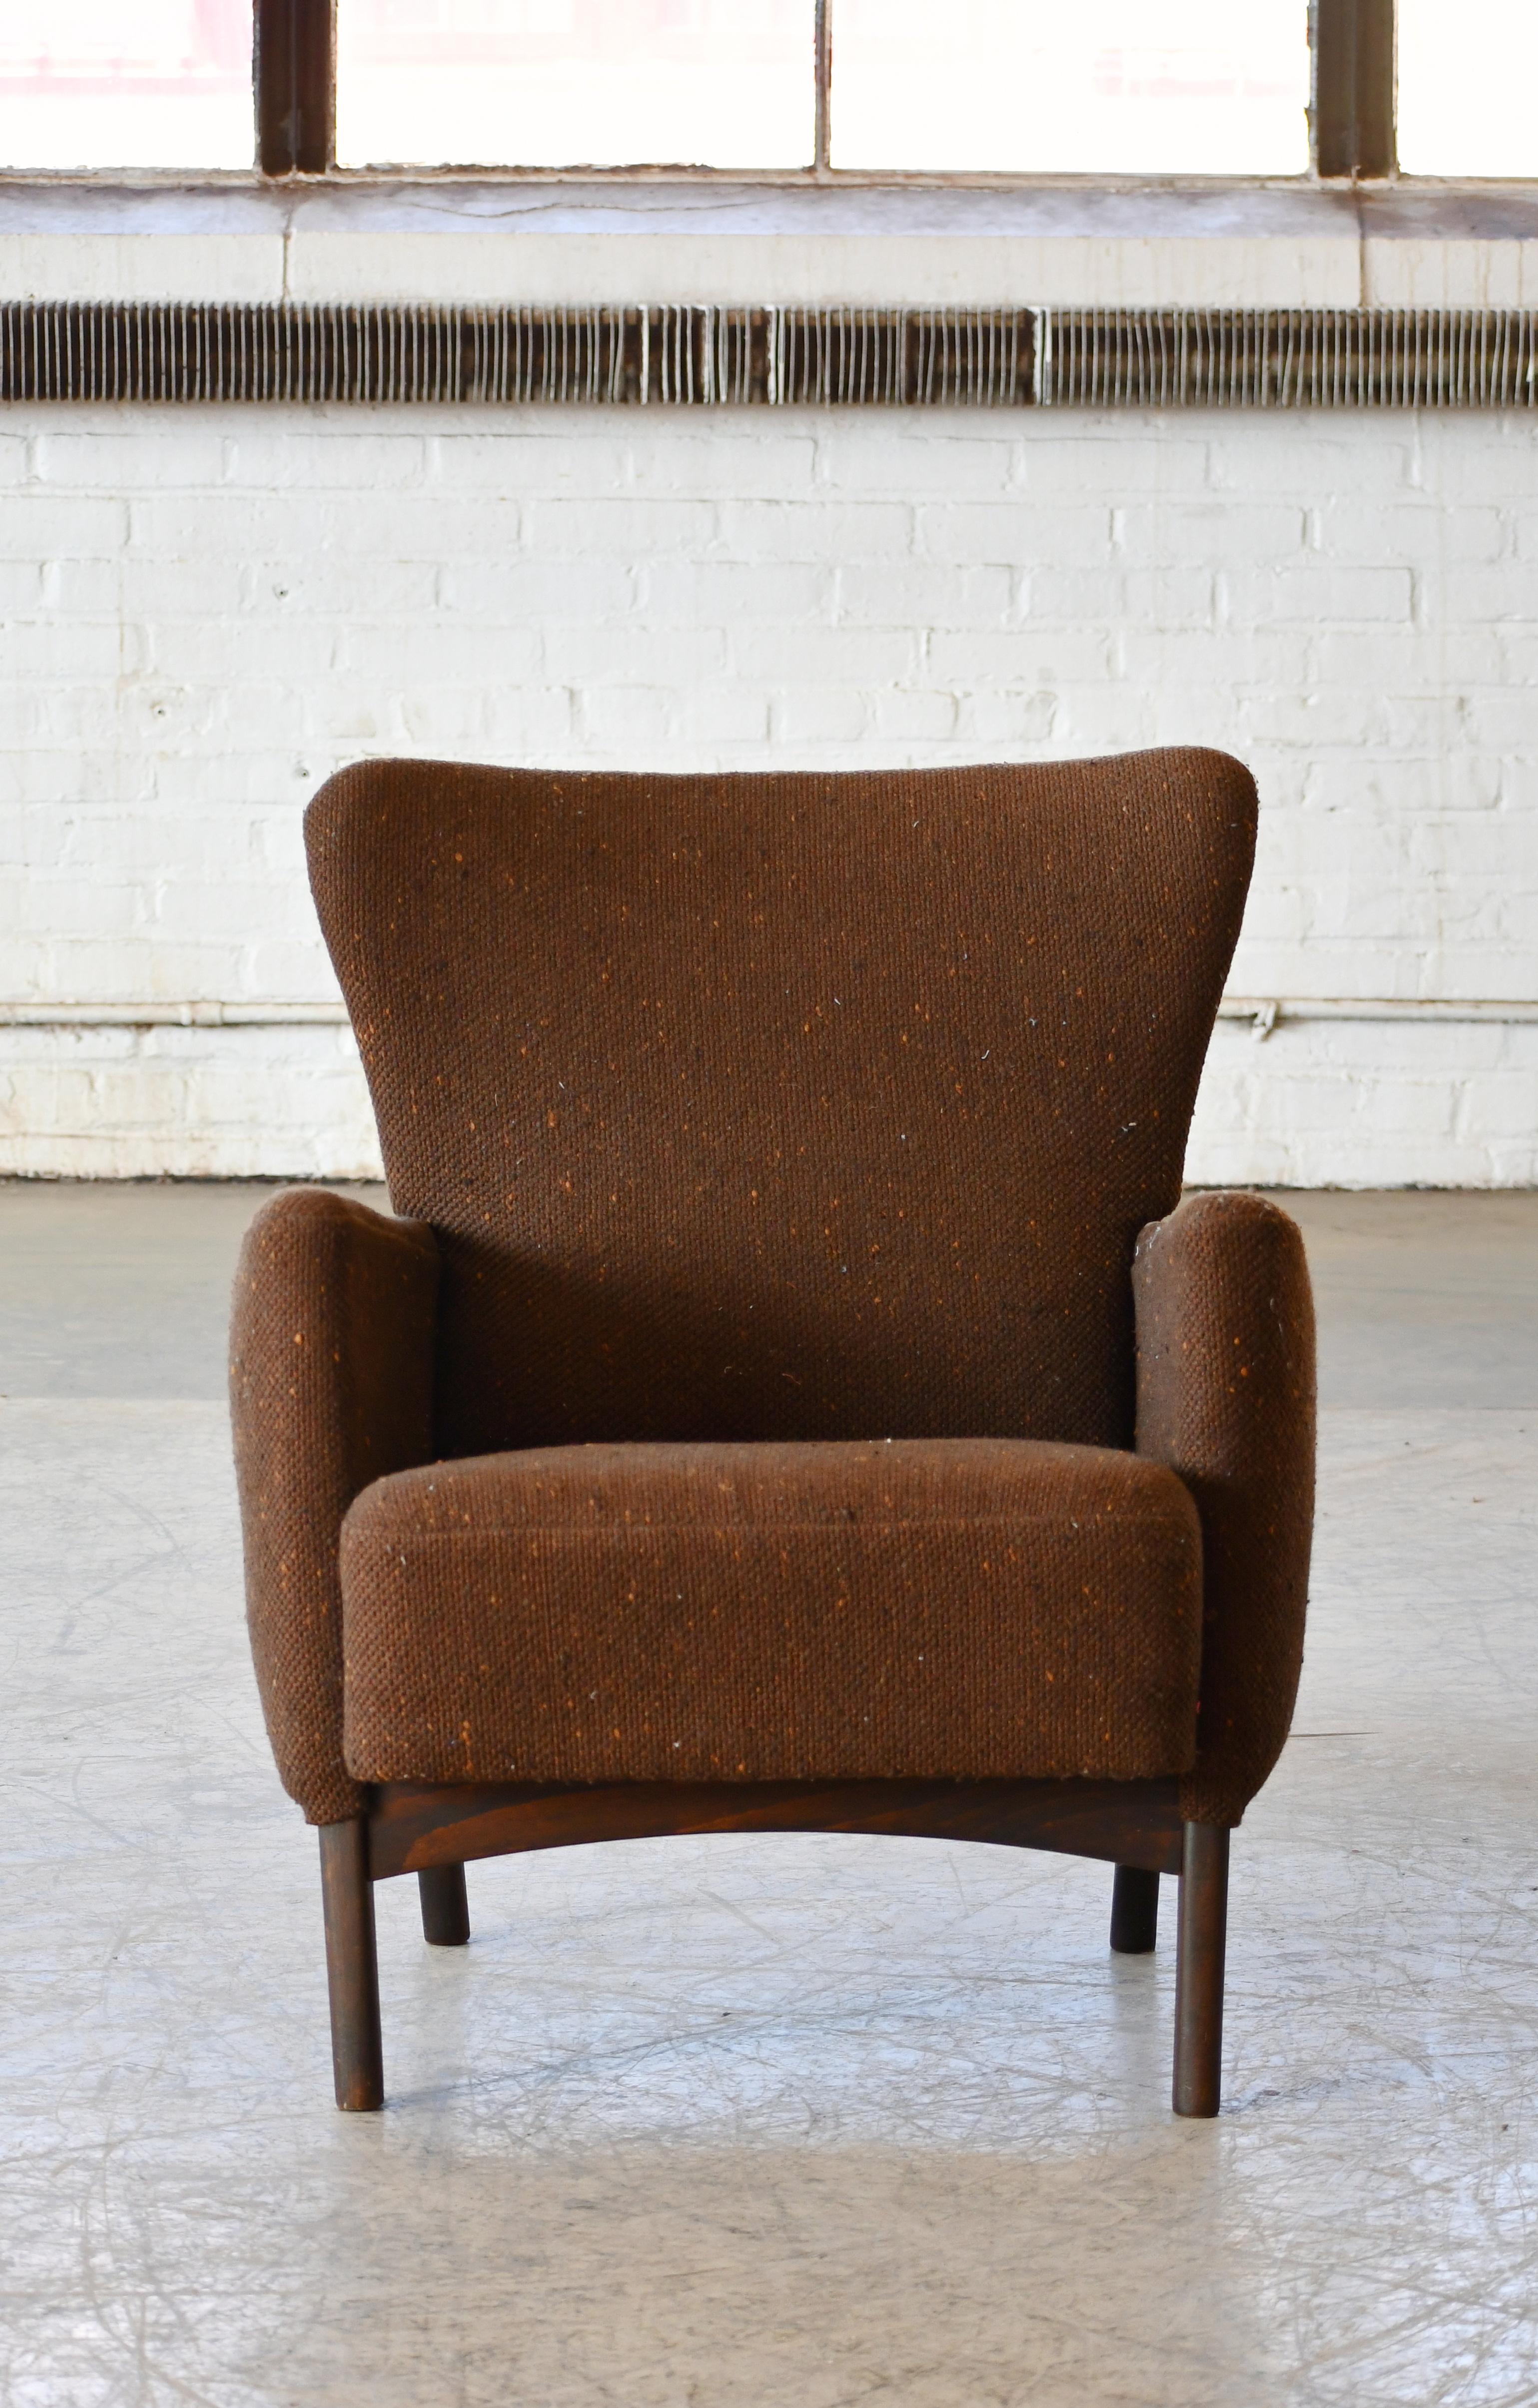 Magnifique fauteuil danois des années 1950 de Fritz Hansen. Très élégante avec une forme organique sculpturale et des proportions et une taille harmonieuses qui la rendent très polyvalente et bien adaptée aux habitations urbaines d'aujourd'hui. Le